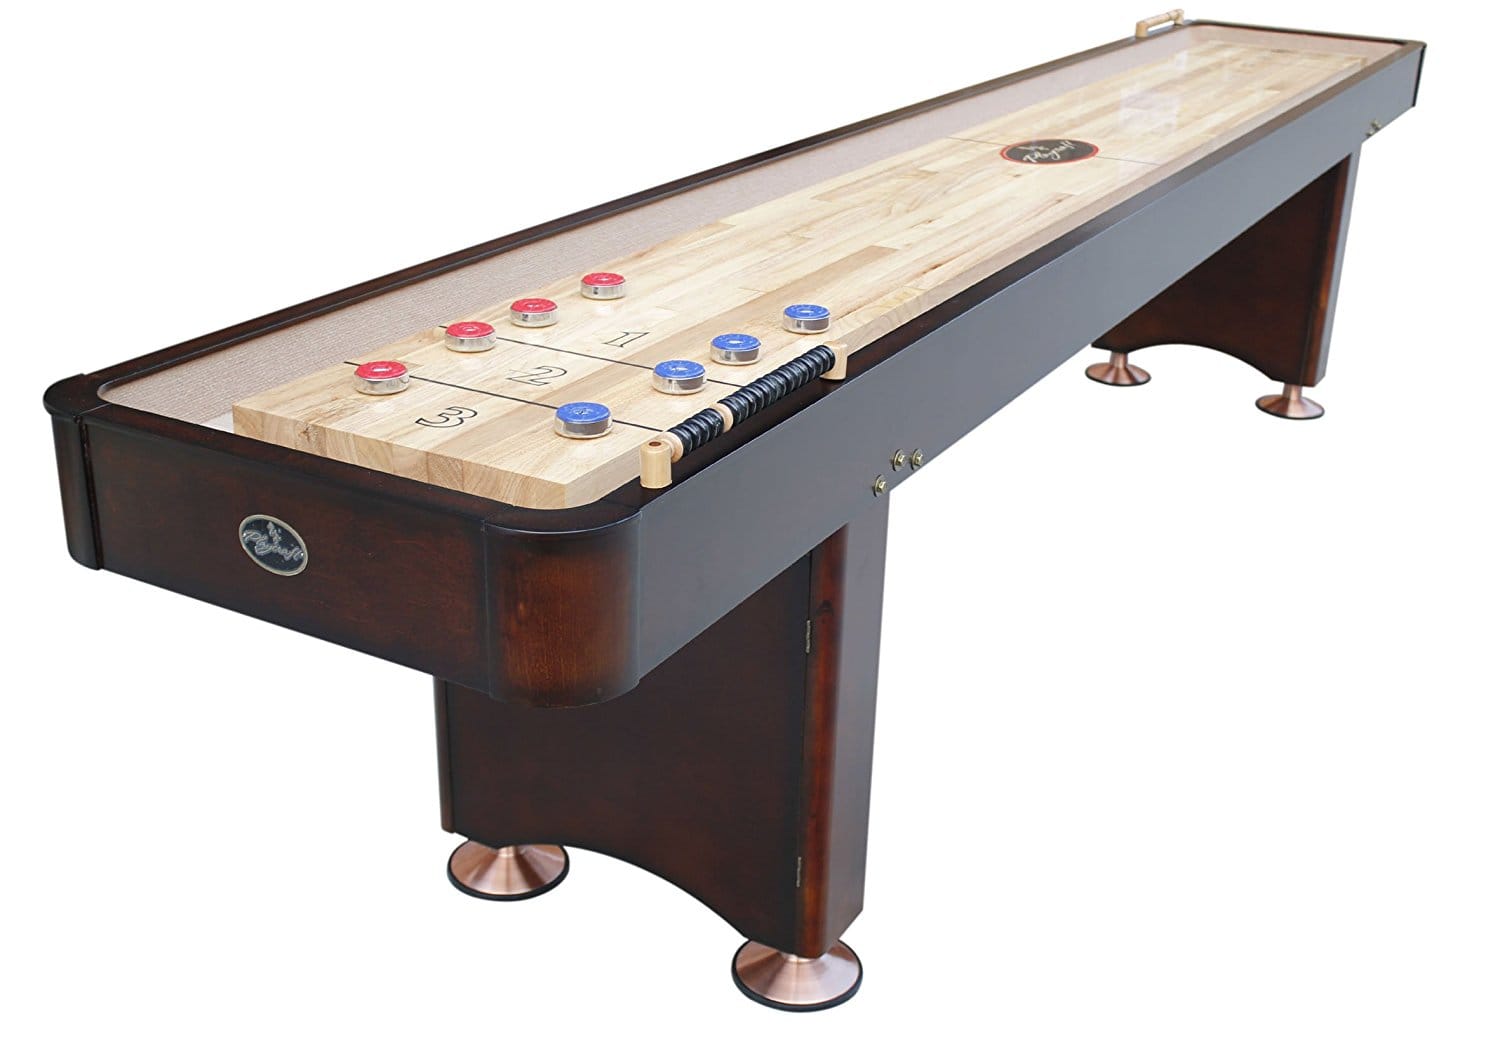 Best shuffleboard table on the market